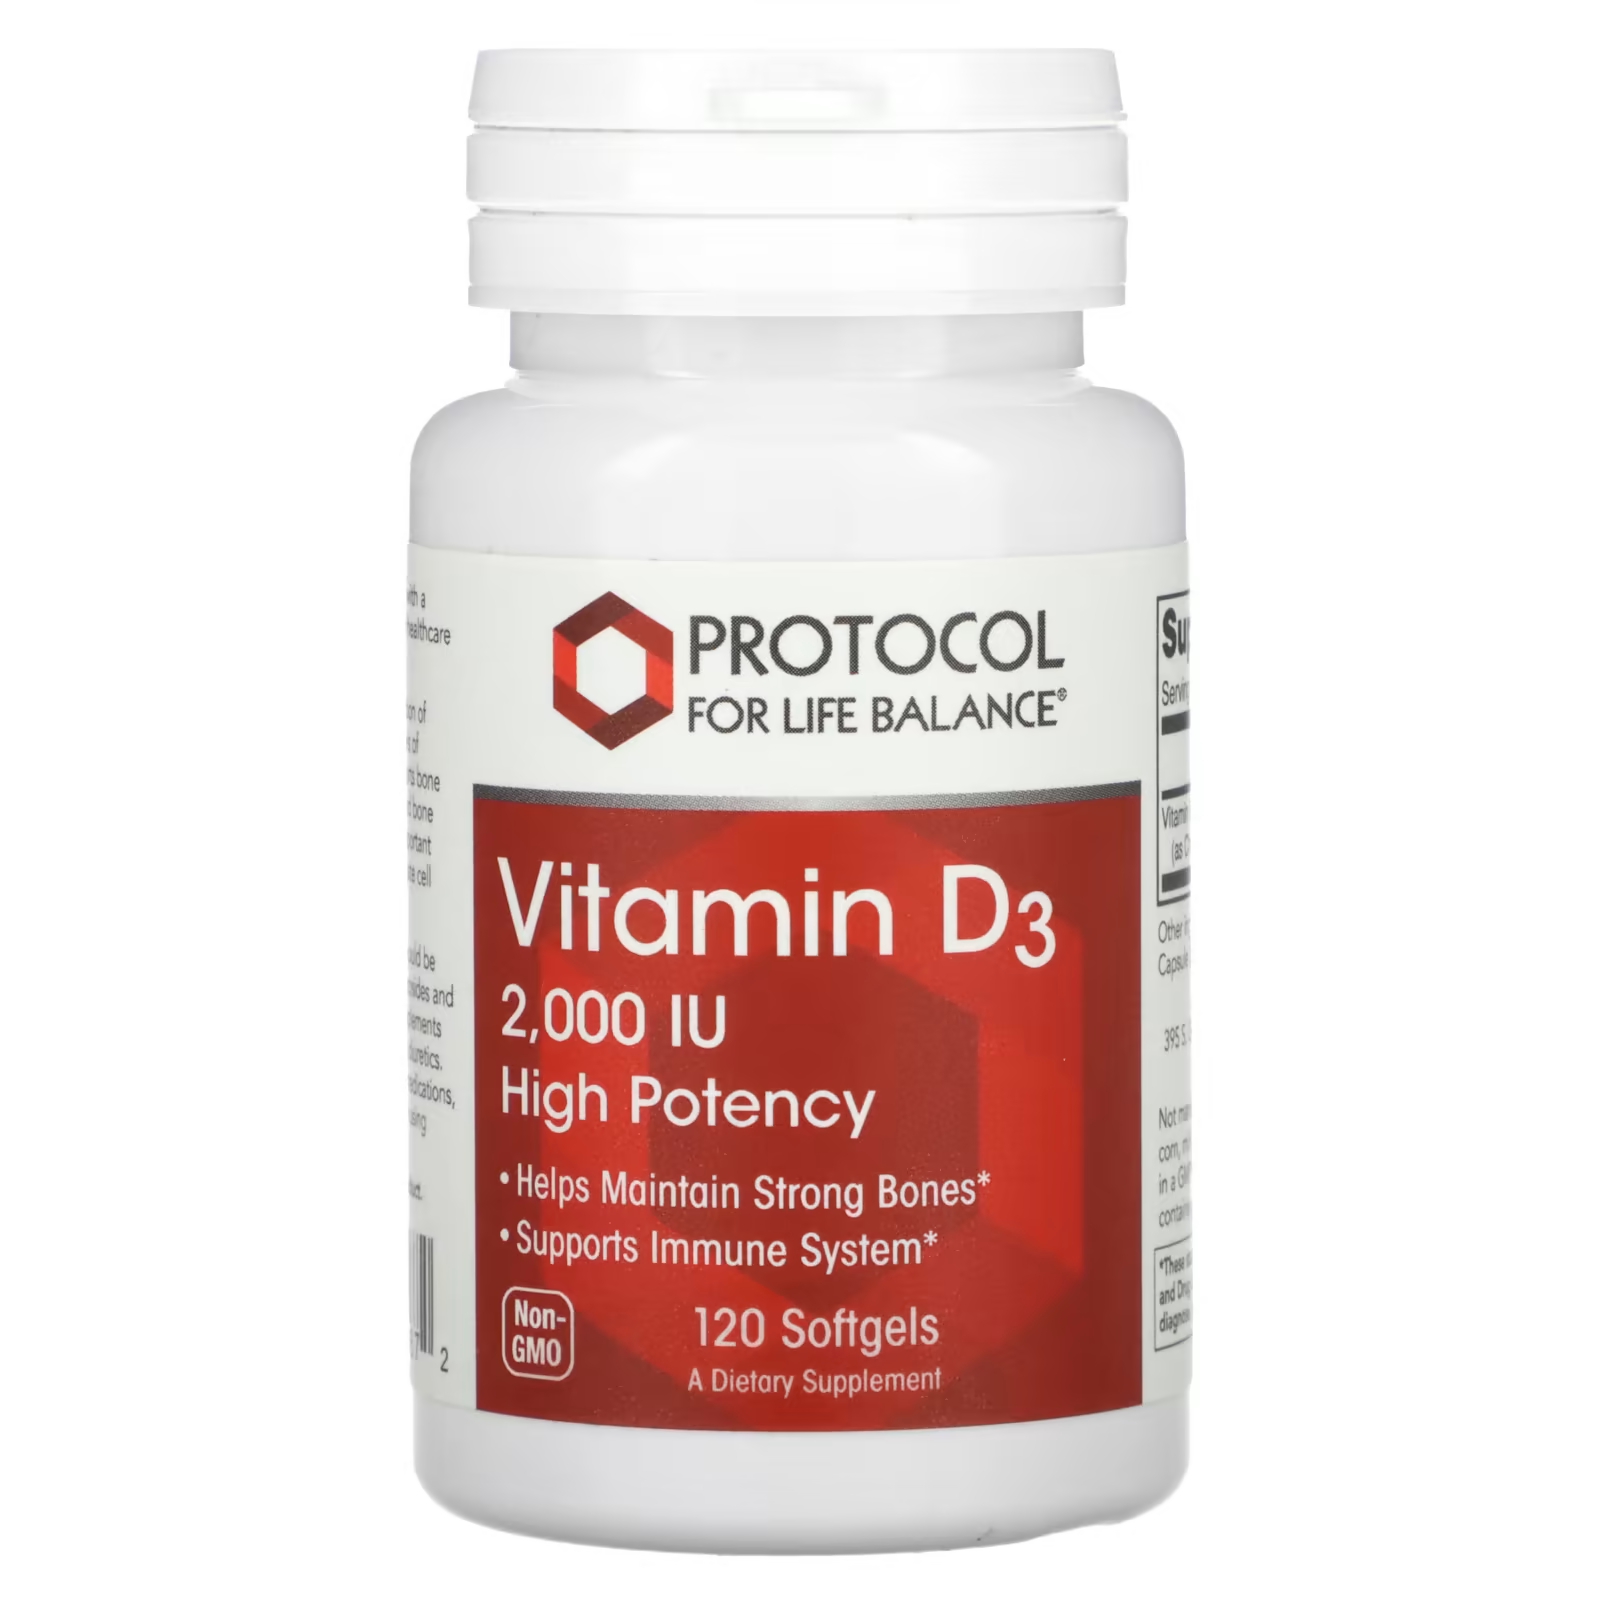 Витамин D3 Protocol for Life Balance высокая эффективность 2000 МЕ, 120 мягких таблеток swanson d3 с кокосовым маслом высокая эффективность 2000 ме 60 мягких таблеток